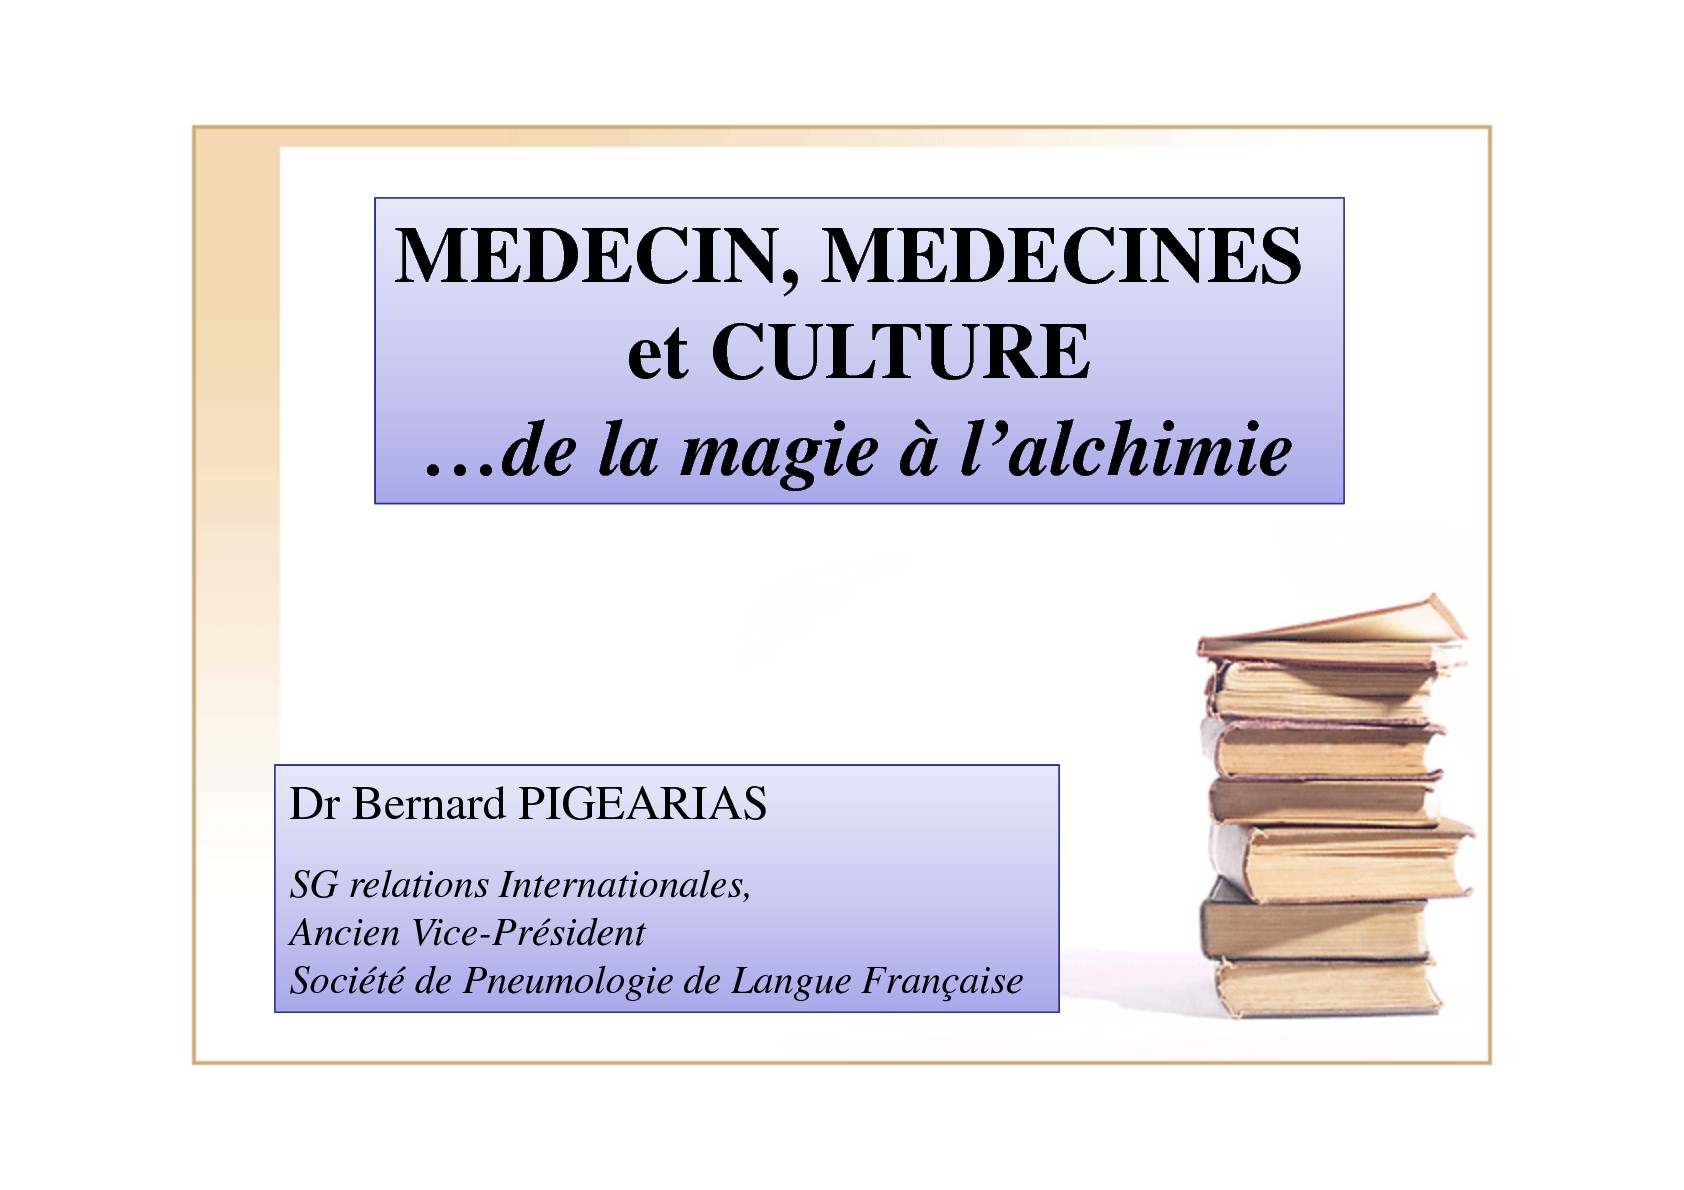 Médecin, Médecines et Culture. Bernard Pigearias